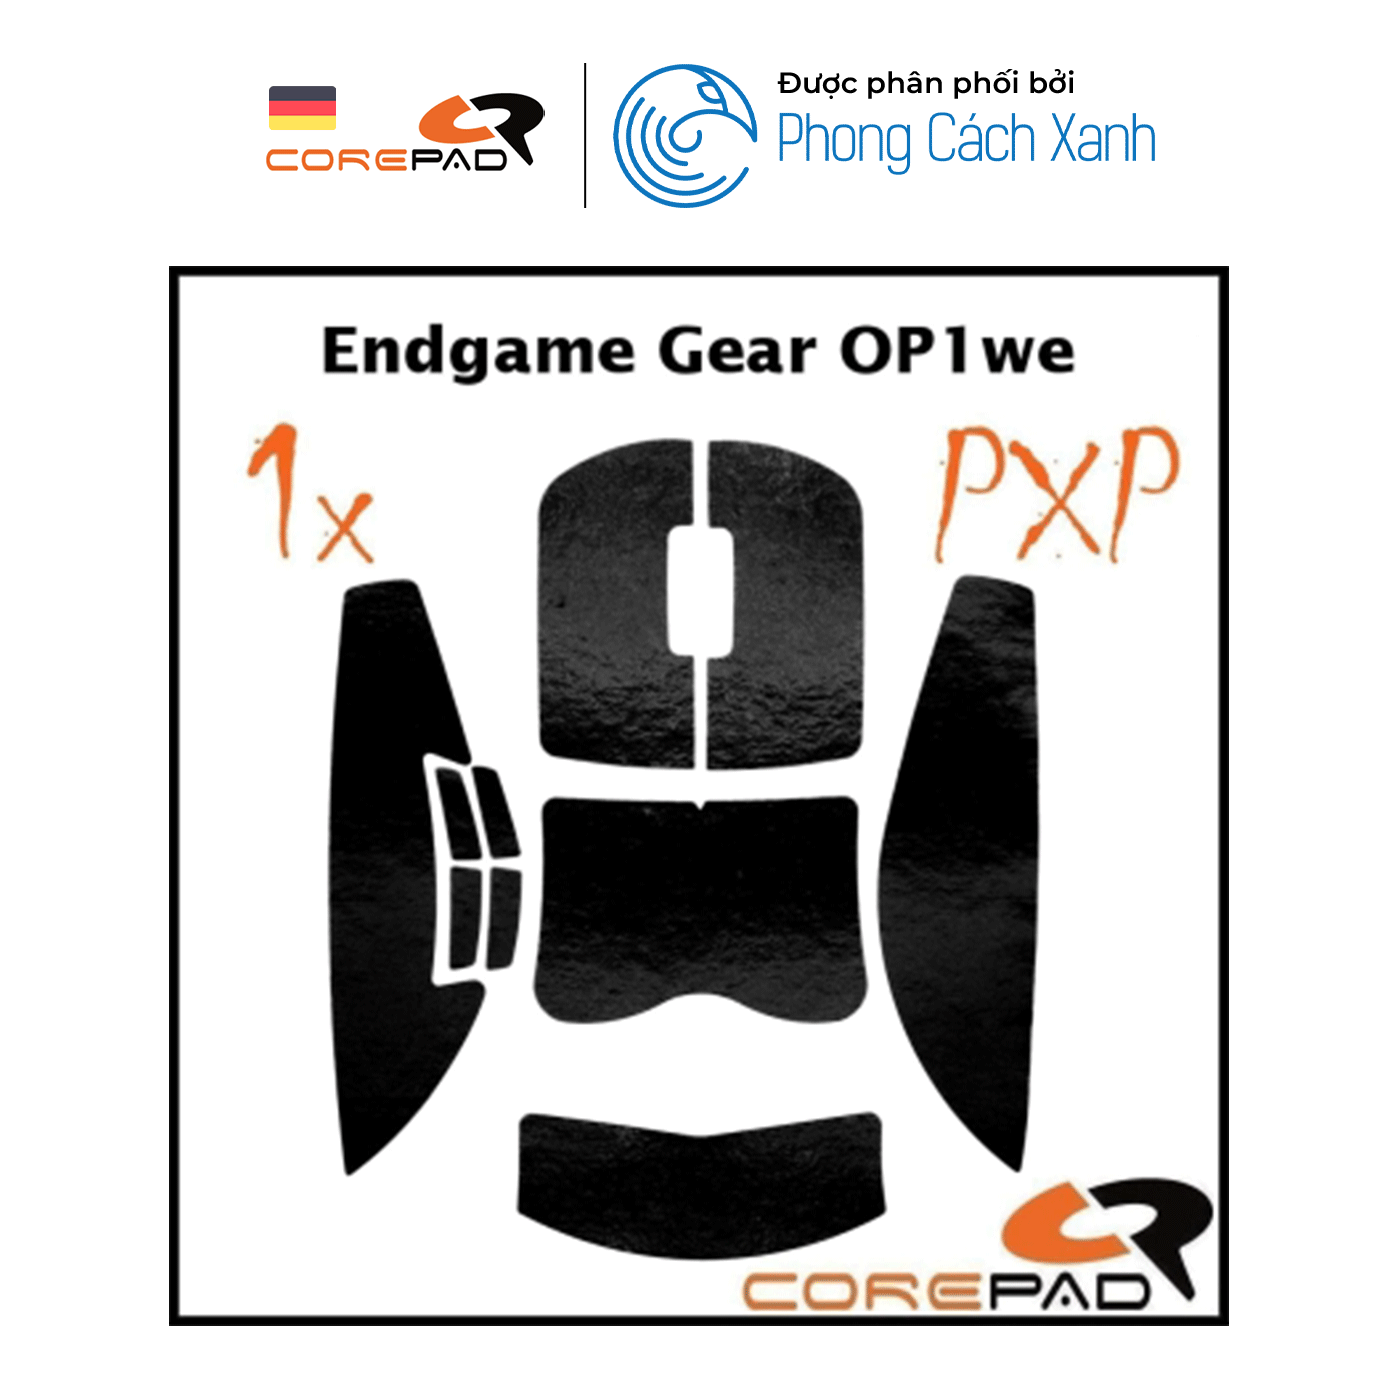 Bộ grip tape Corepad PXP Grips Endgame Gear OP1 / Endgame Gear OP1 8K / Endgame Gear OP1 RGB / Endgame Gear OP1we - Hàng Chính Hãng